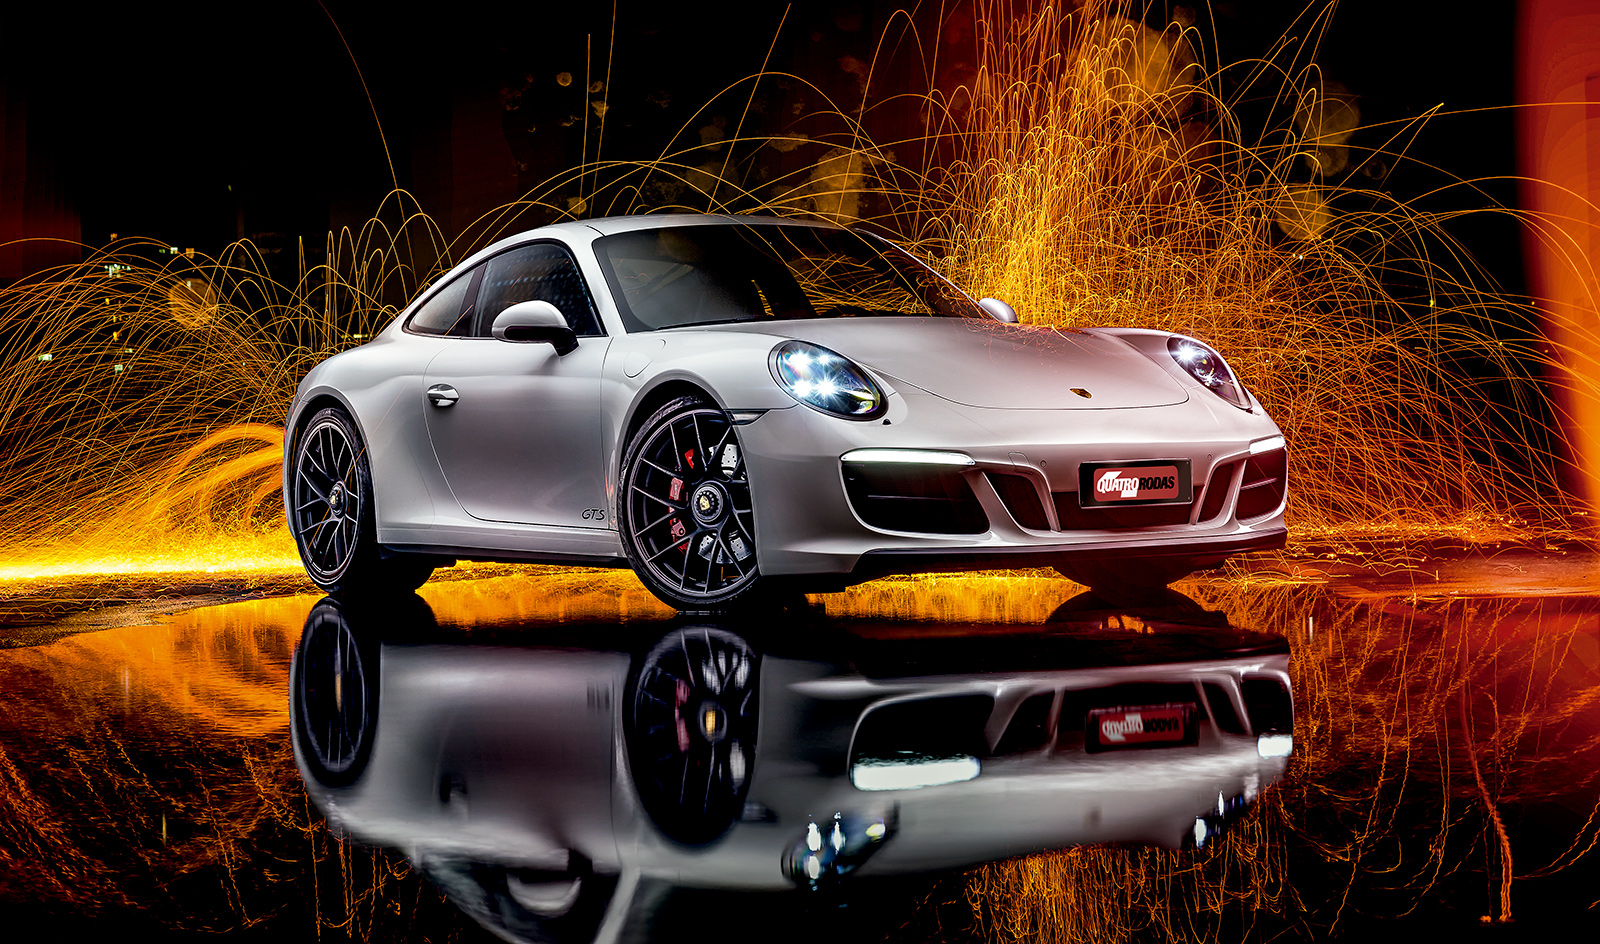 La Porsche 911 GTS è stato l'ultimo modello turbo della linea 911